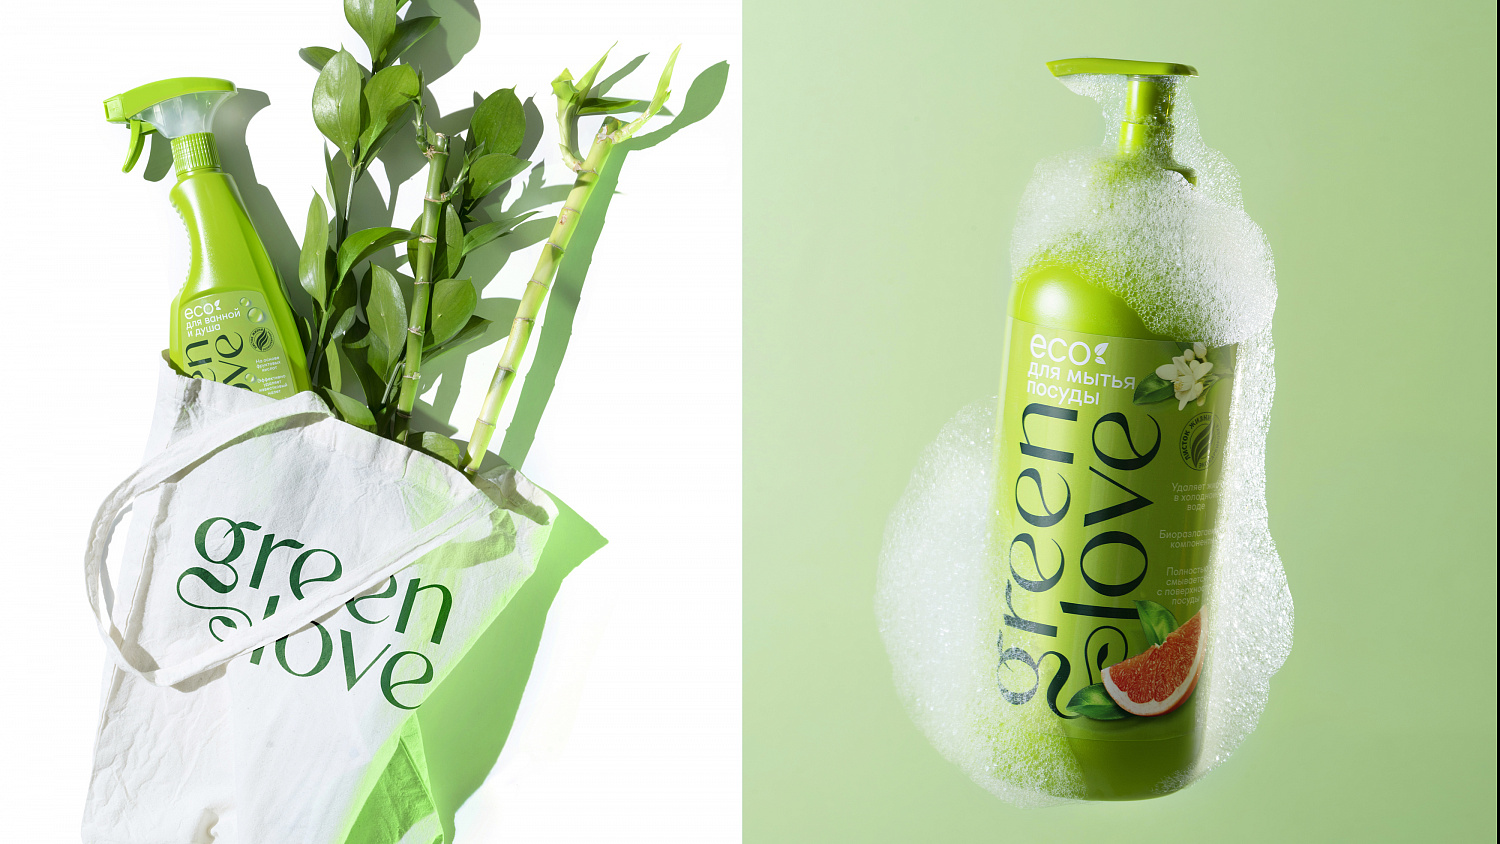 Green Love: Дизайн упаковки бытовой химии - Портфолио Depot